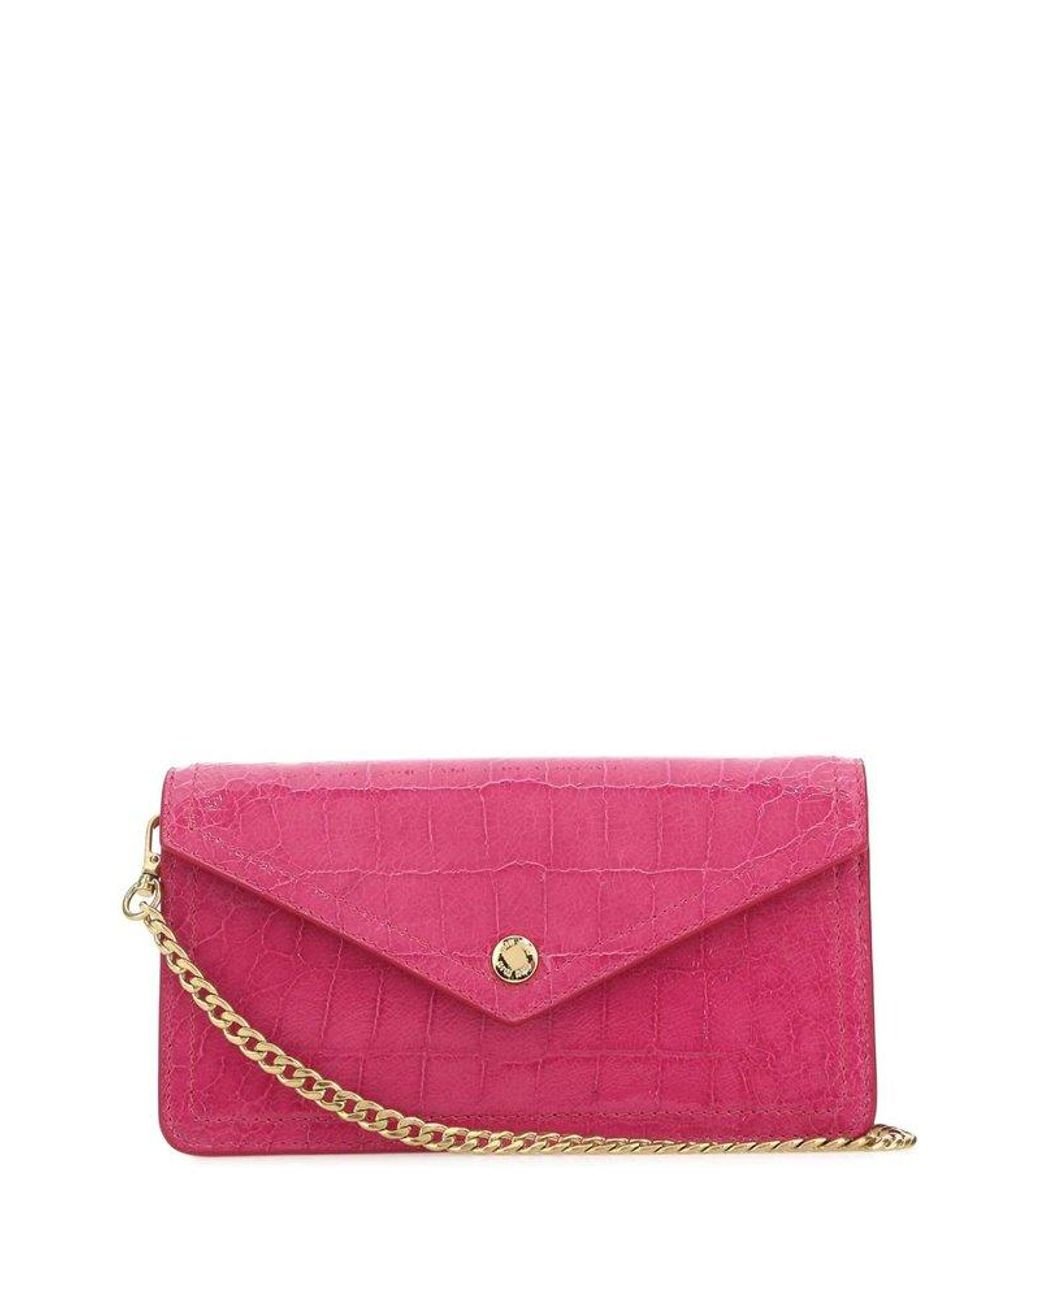 Miu Miu Chained Envelop Clutch Bag in Pink | Lyst